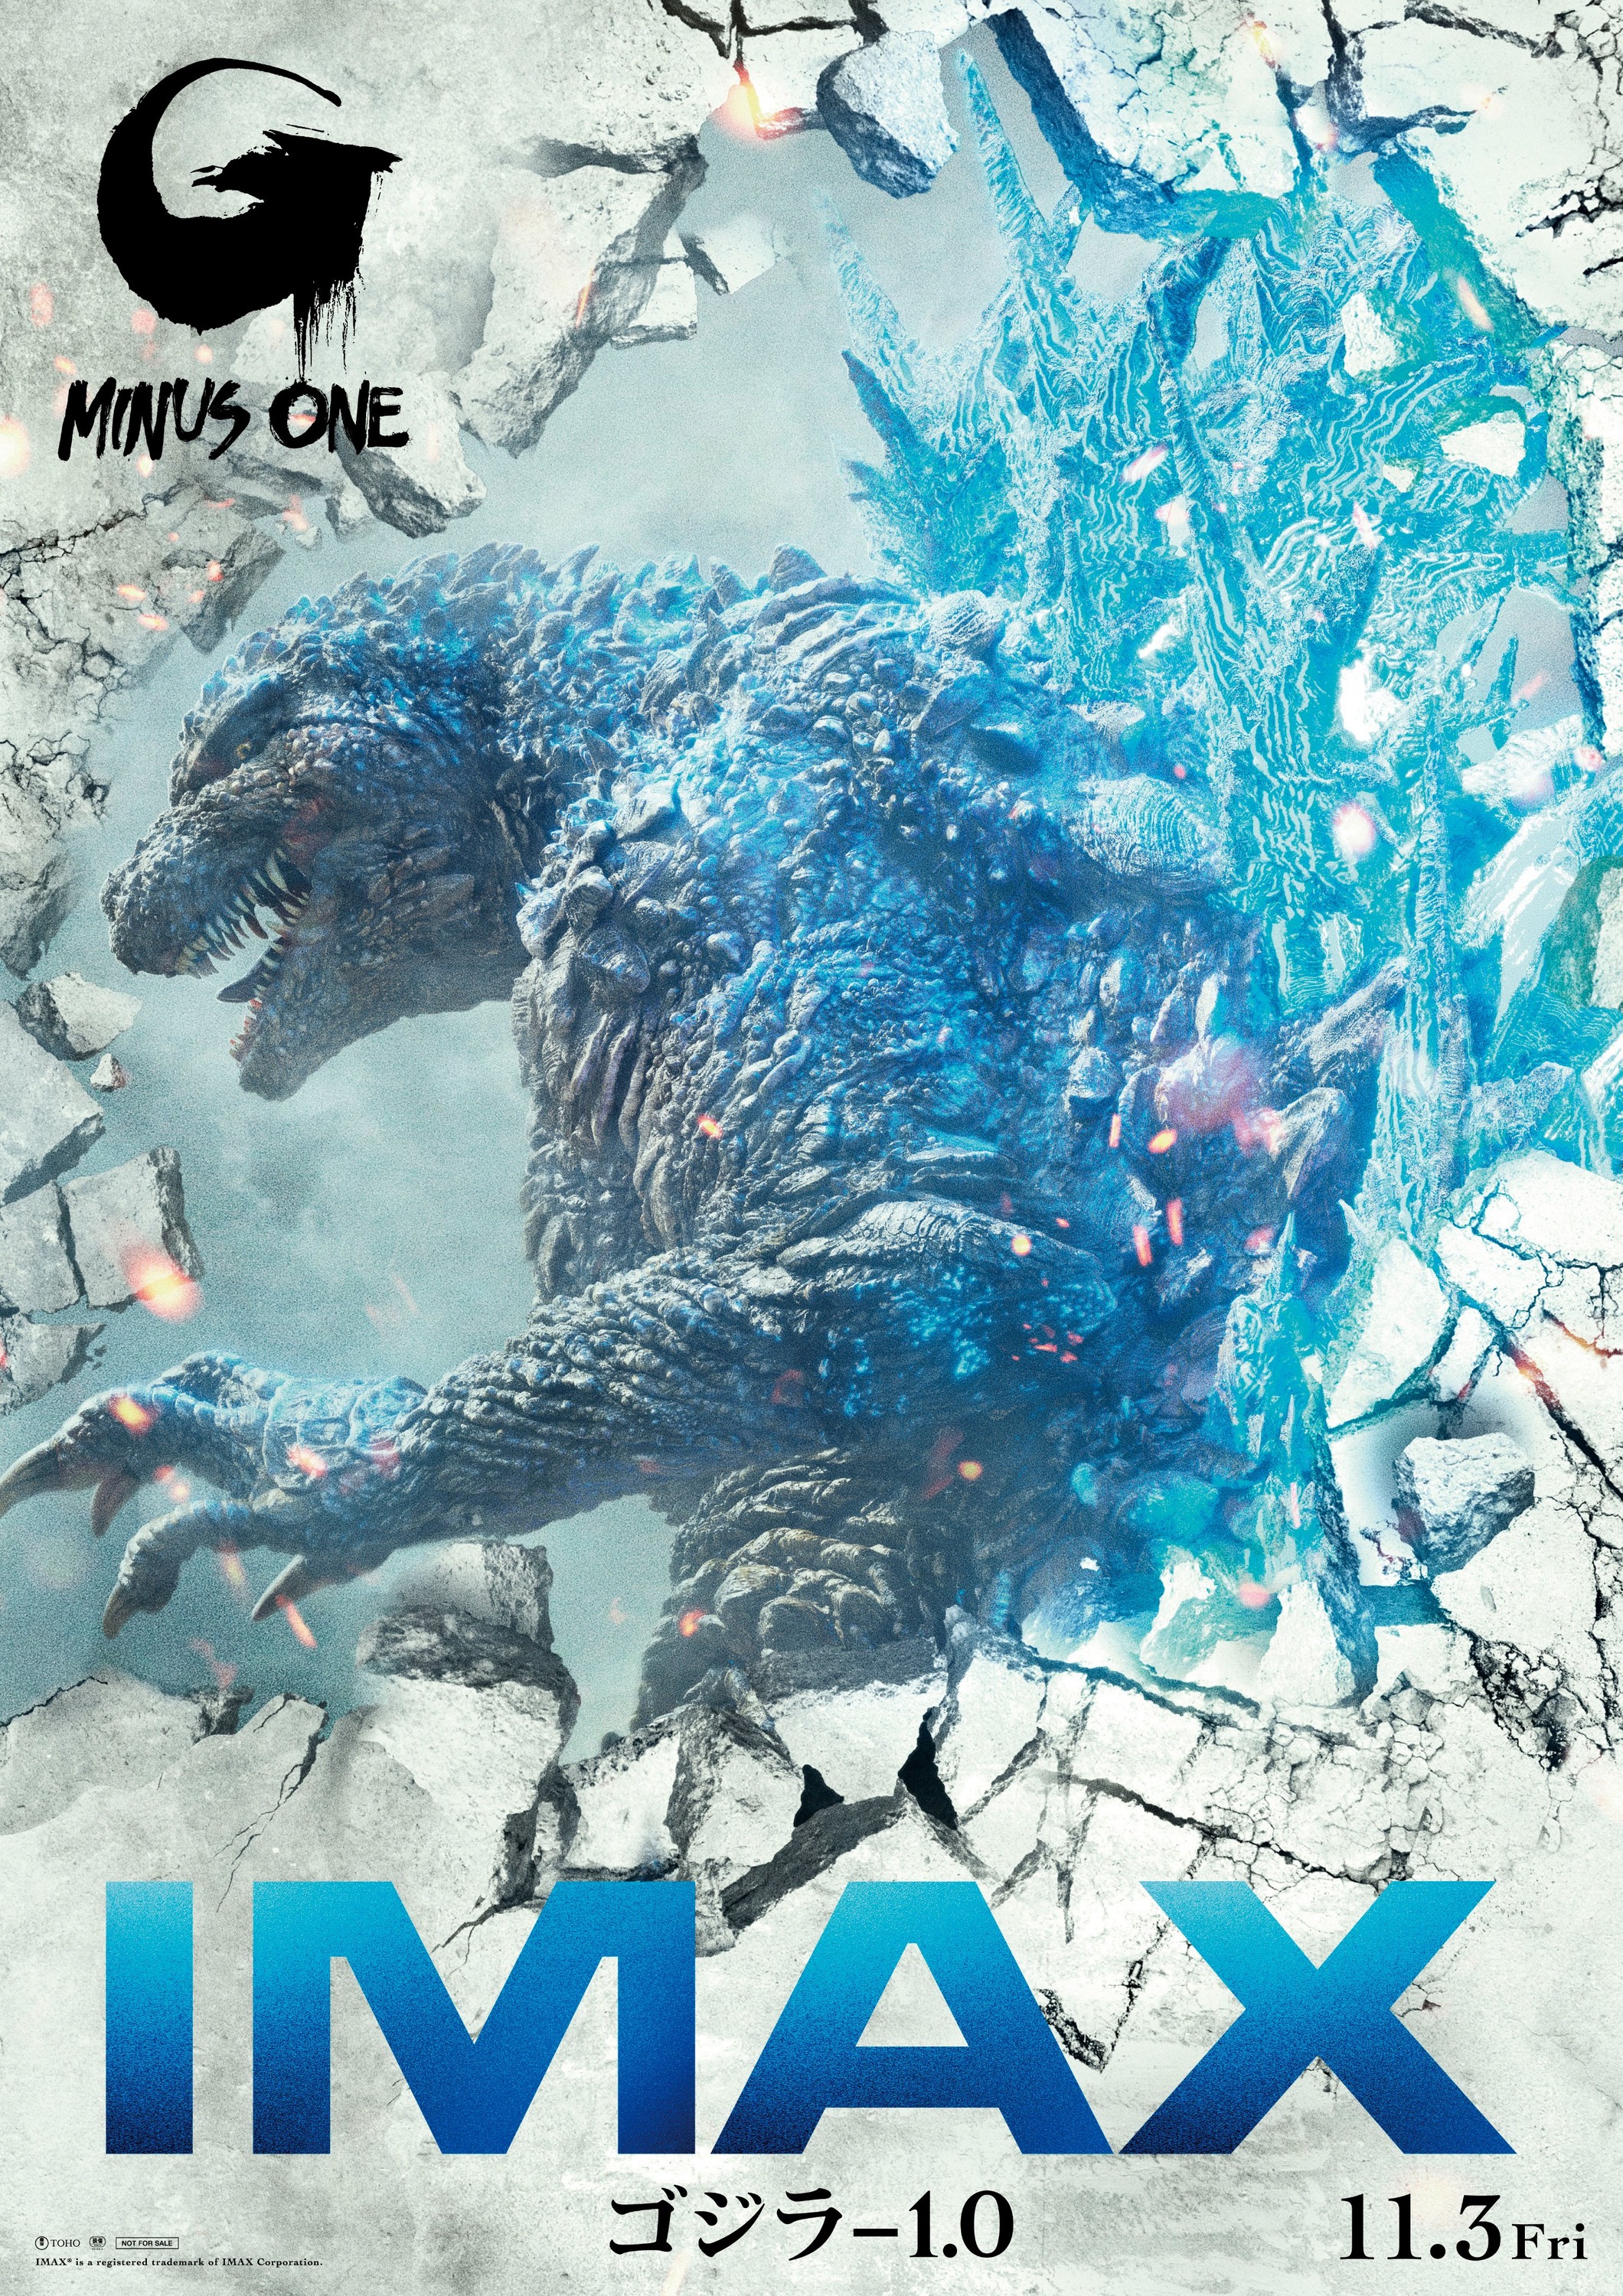 Mega Sized Movie Poster Image for Godzilla: Minus One (#2 of 11)